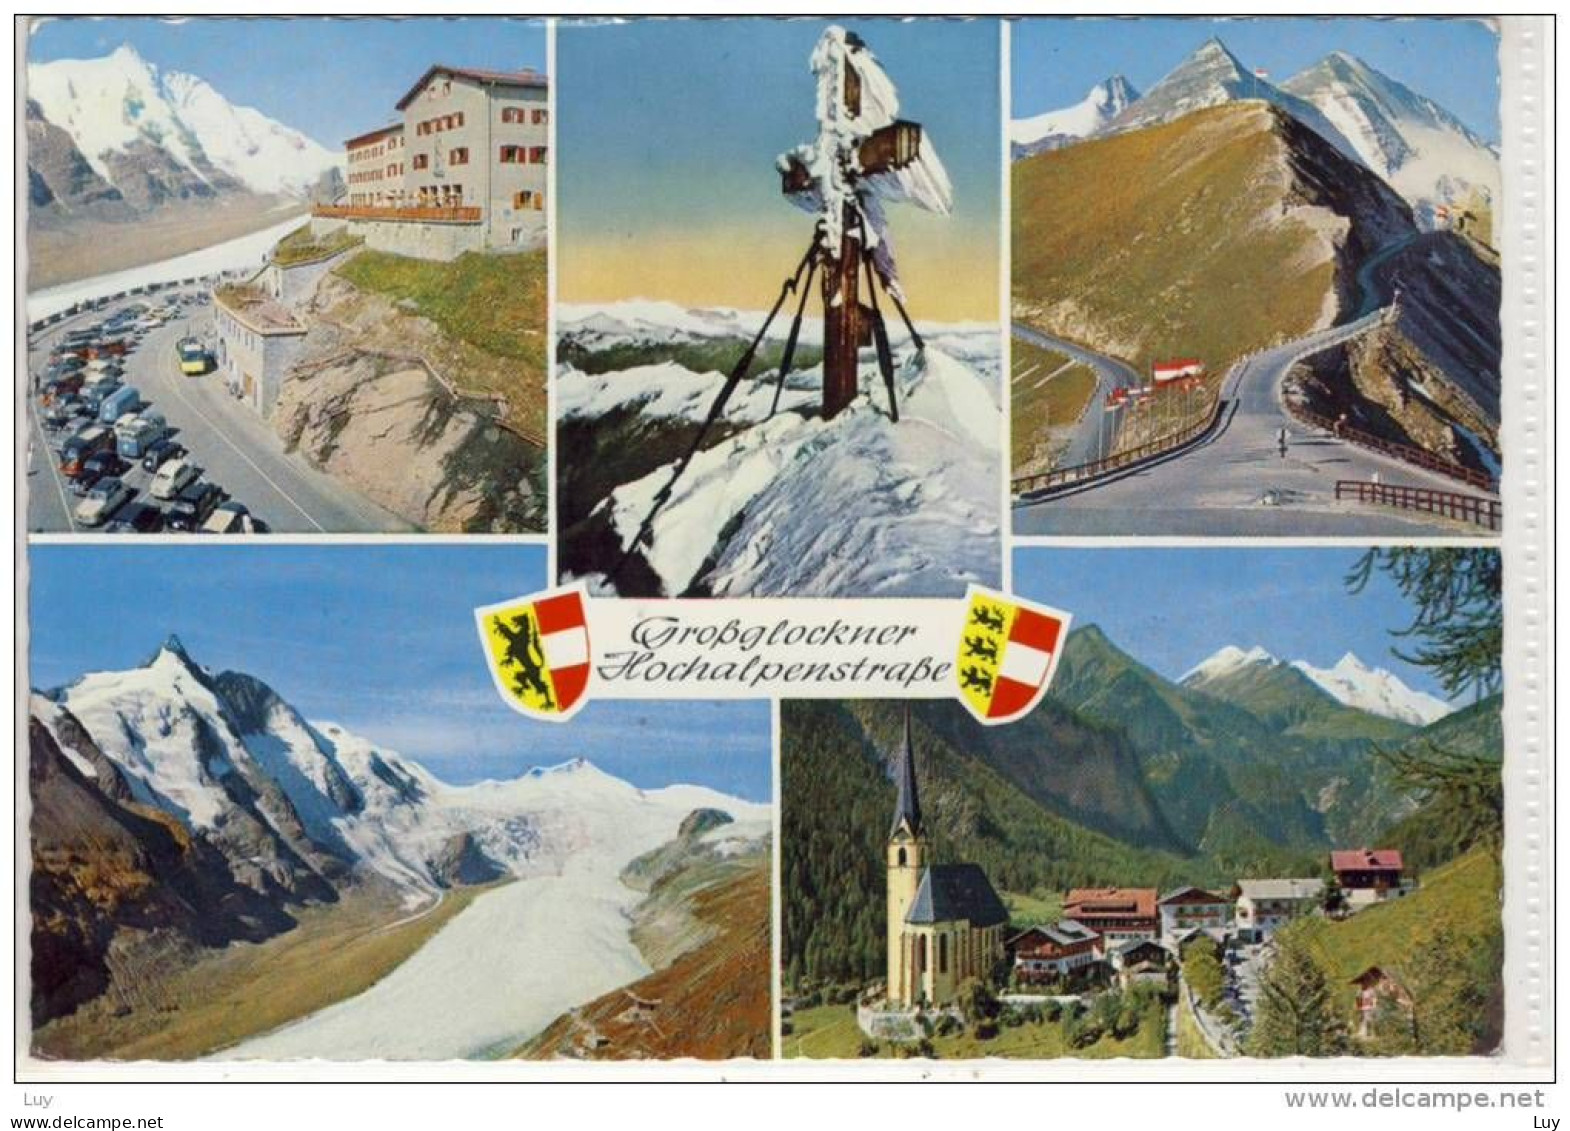 GROSSGLOCKNER HOCHALPENSTRASSE - Mehrbildkarte - Klopeinersee-Orte